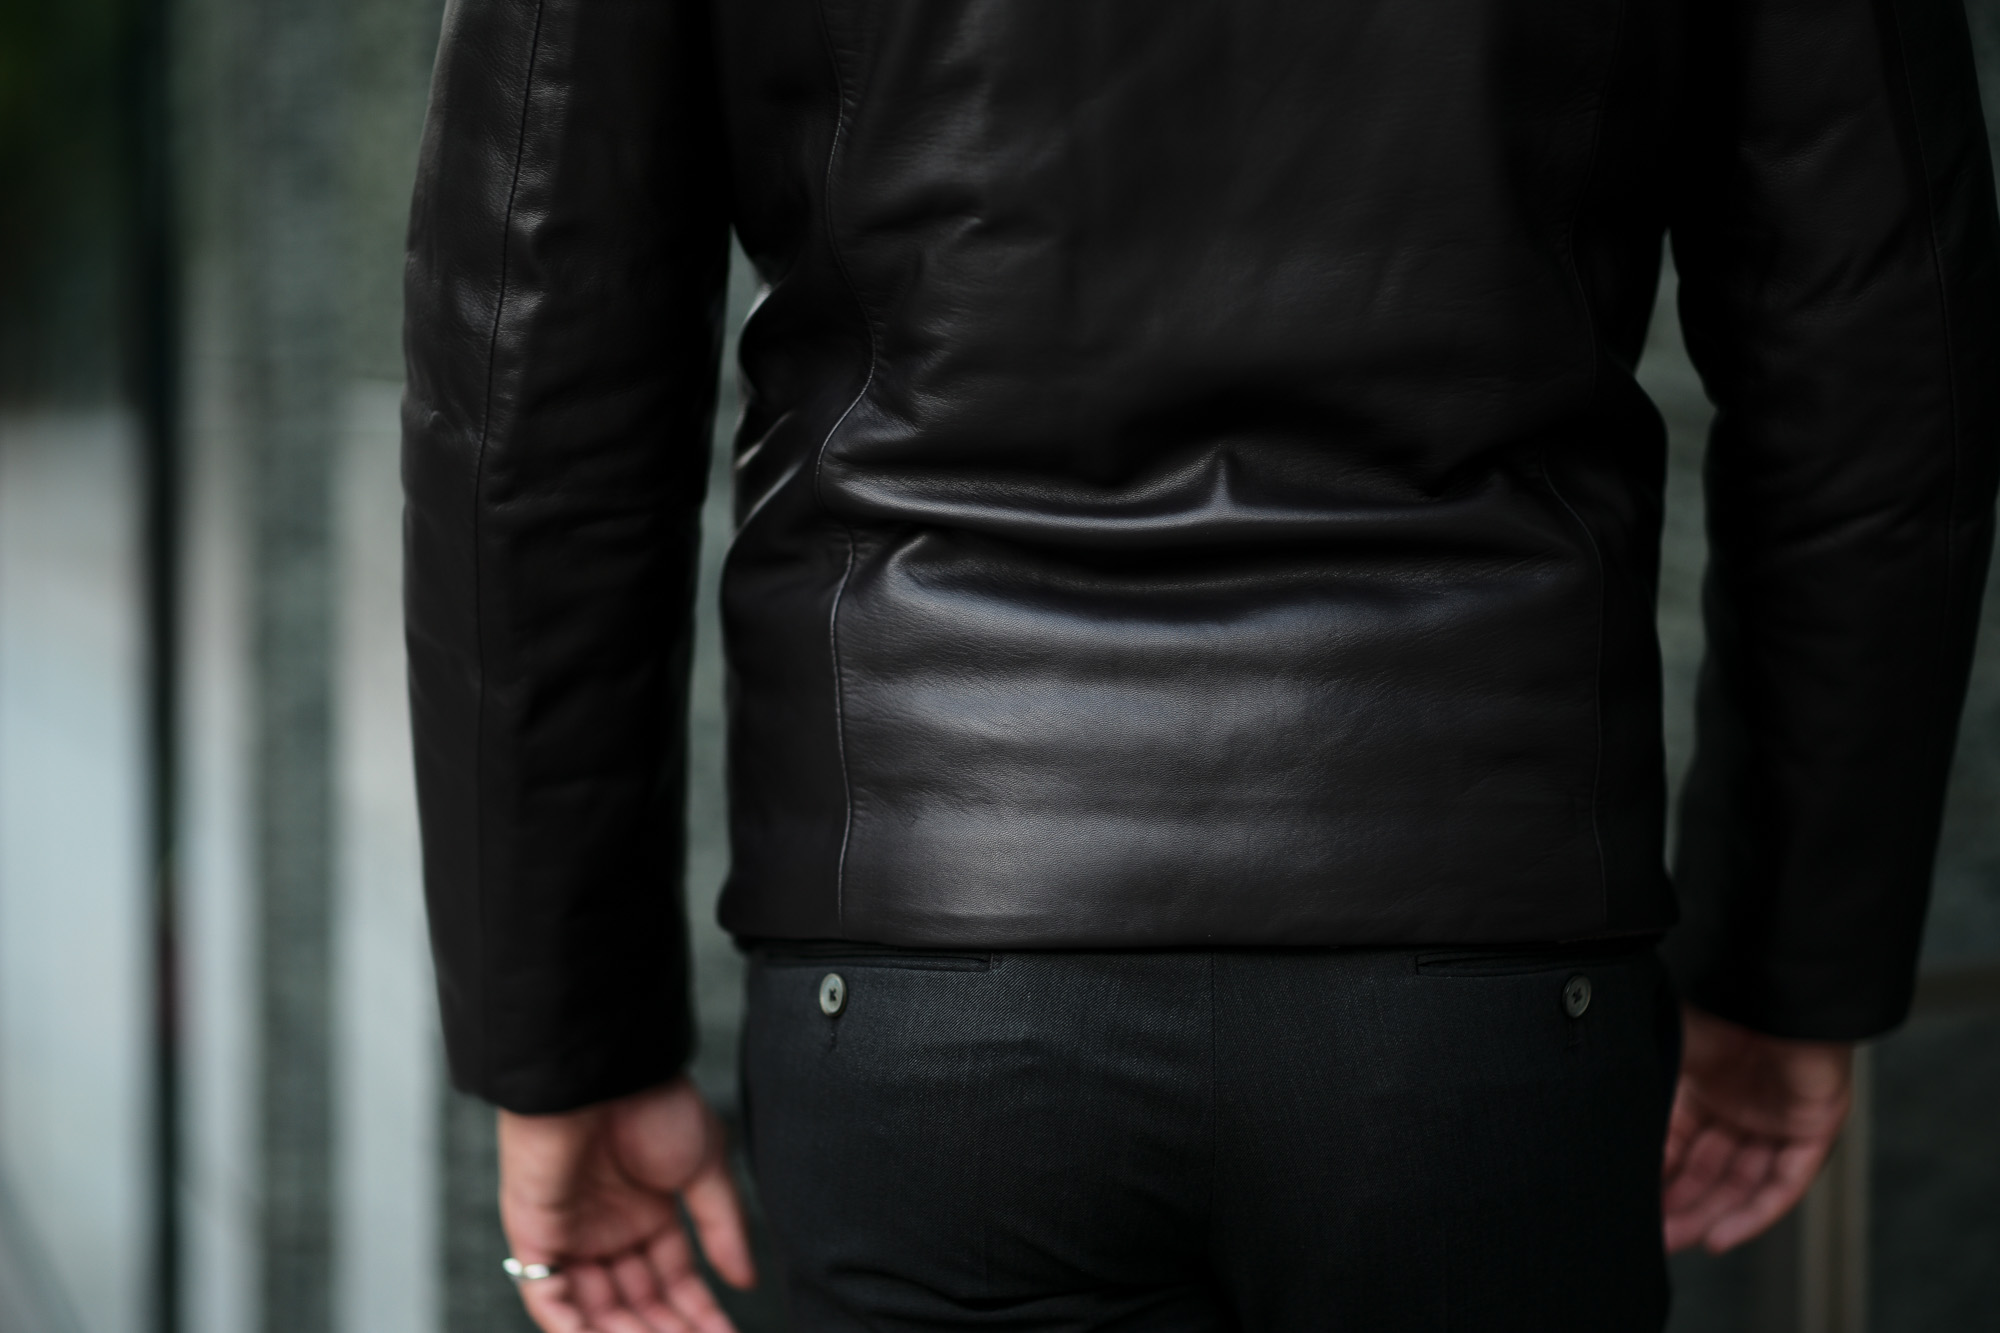 ALTACRUNA (アルタクルーナ) Reversible Leather Padded Jacket (リバーシブル レザー パデッド ジャケット) Lamb Leather (ラムレザー) レザー × ナイロン リバーシブル ジャケット NERO (ブラック・0010) Made in italy (イタリア製) 2020 秋冬新作 愛知 名古屋 Alto e Diritto アルトエデリット